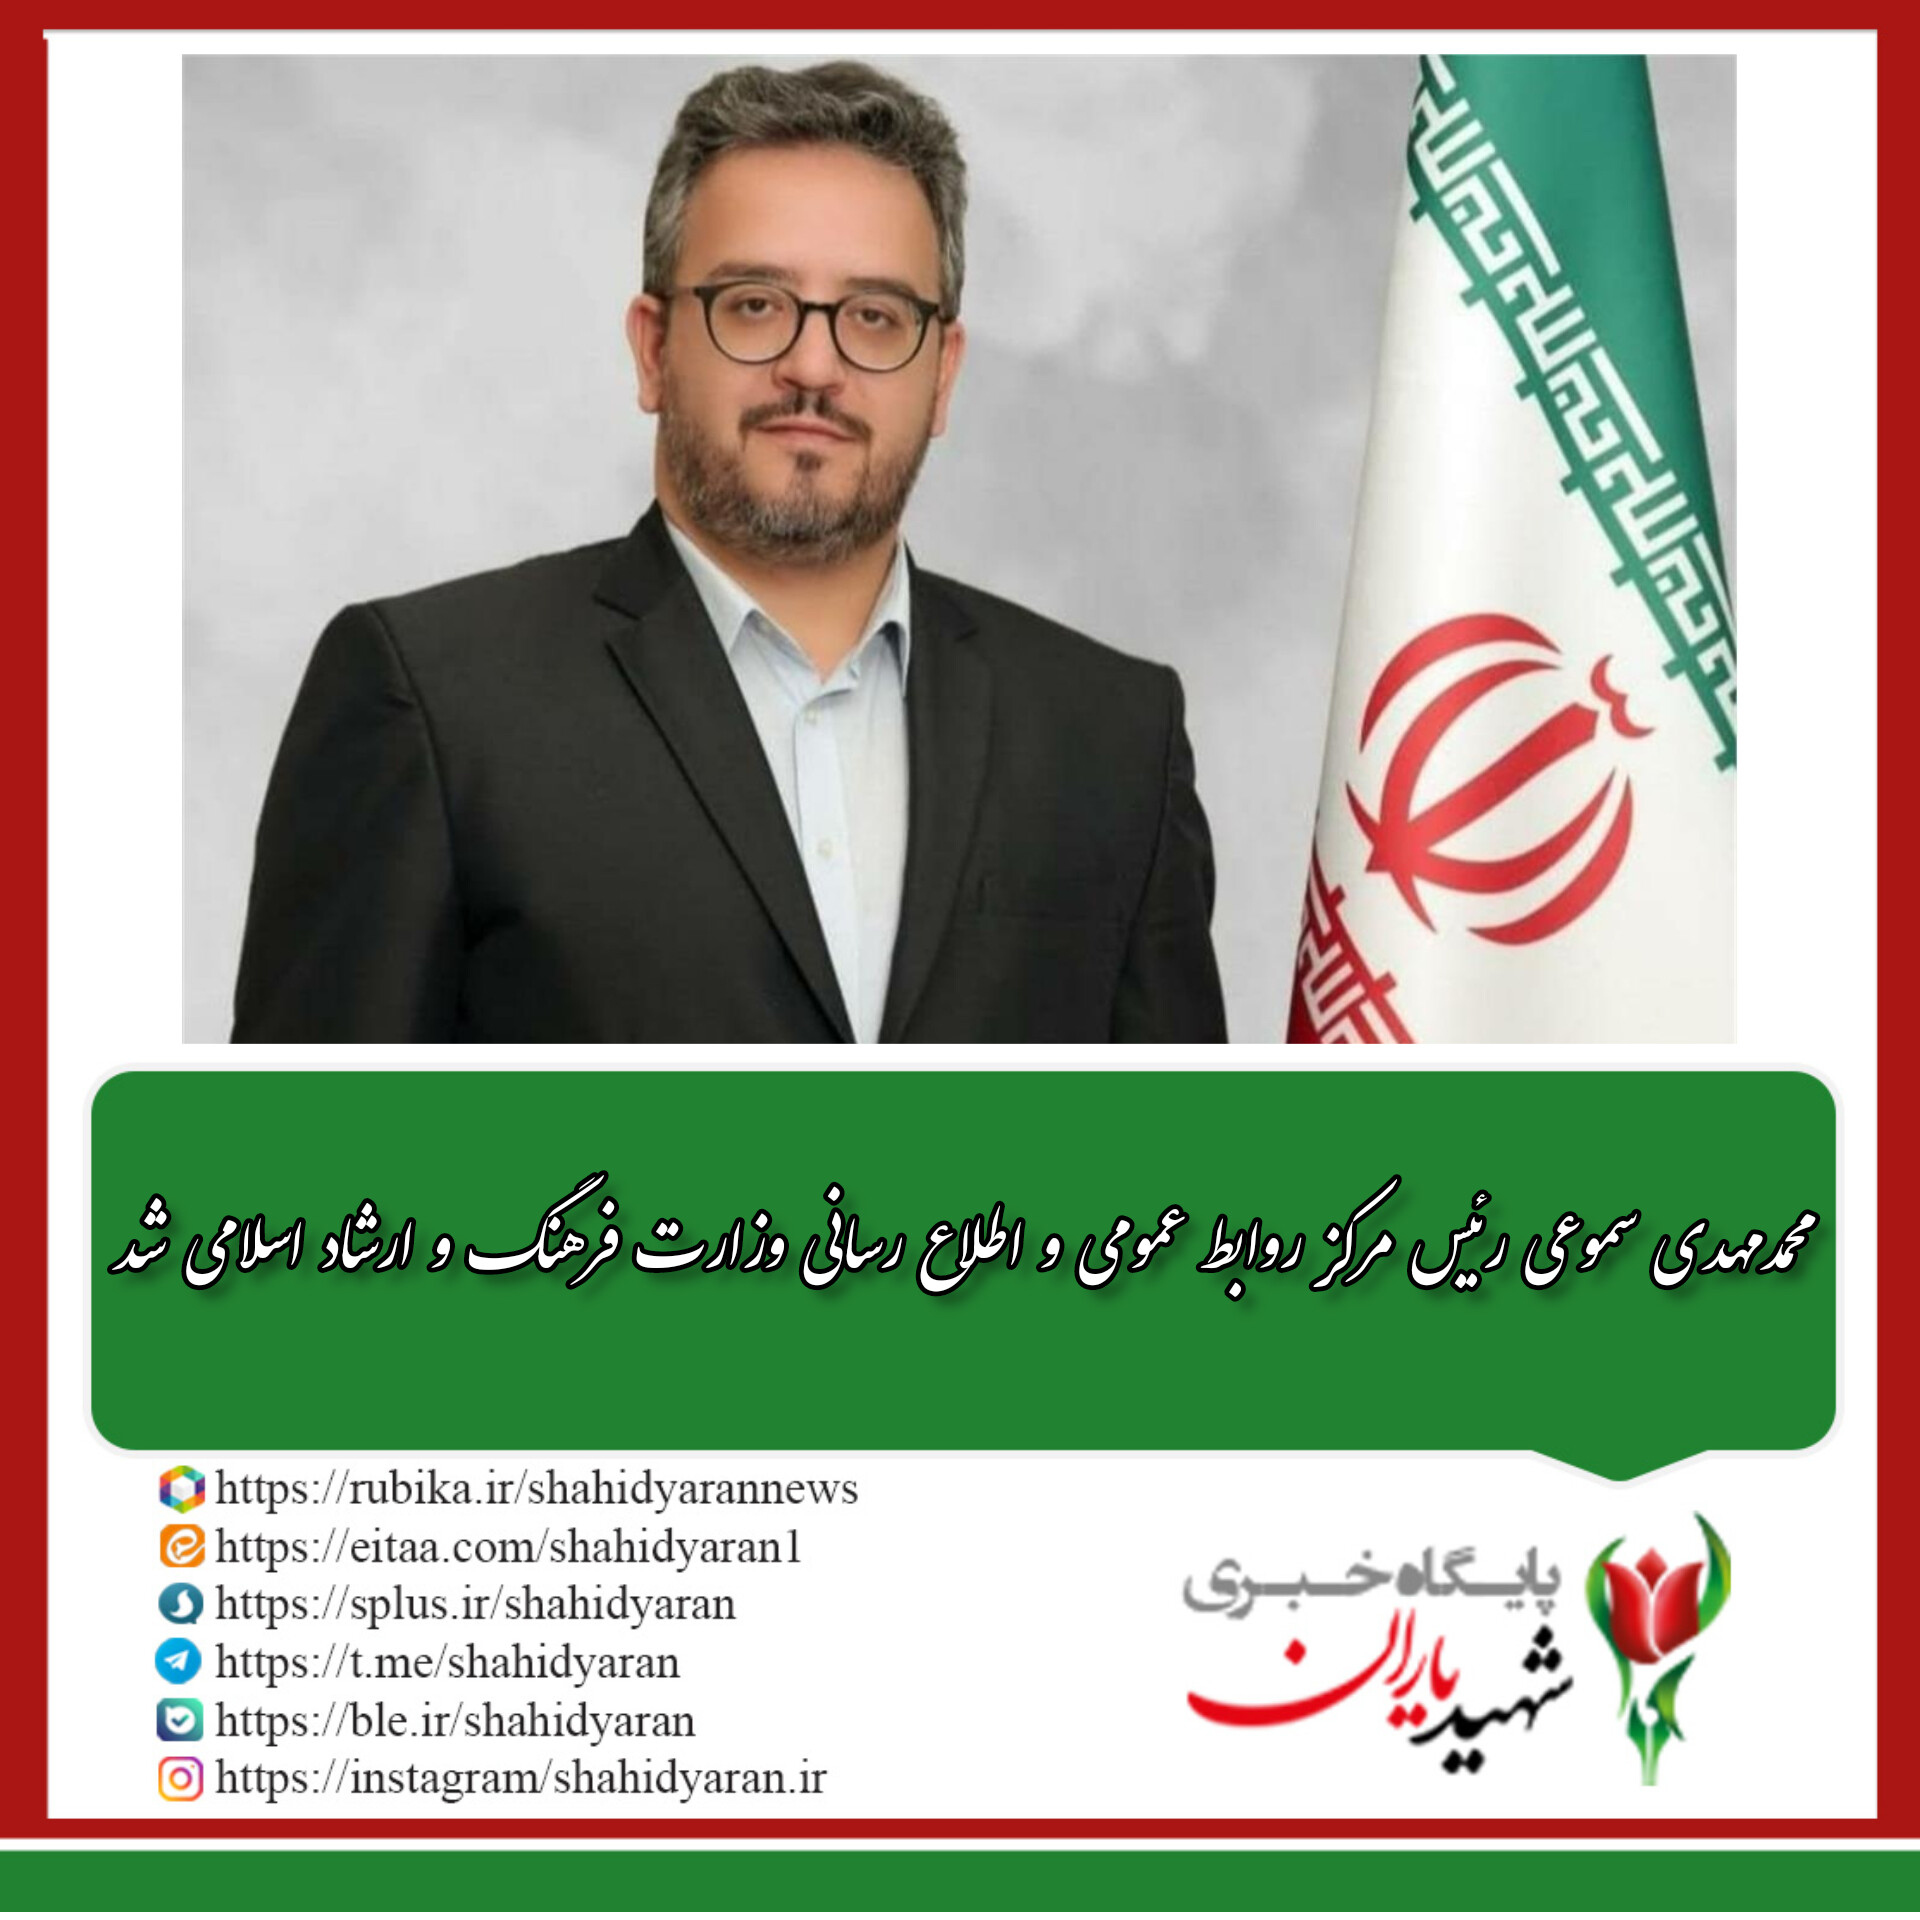 محمدمهدی سموعی رئیس مرکز روابط عمومی و اطلاع رسانی وزارت فرهنگ و ارشاد اسلامی شد